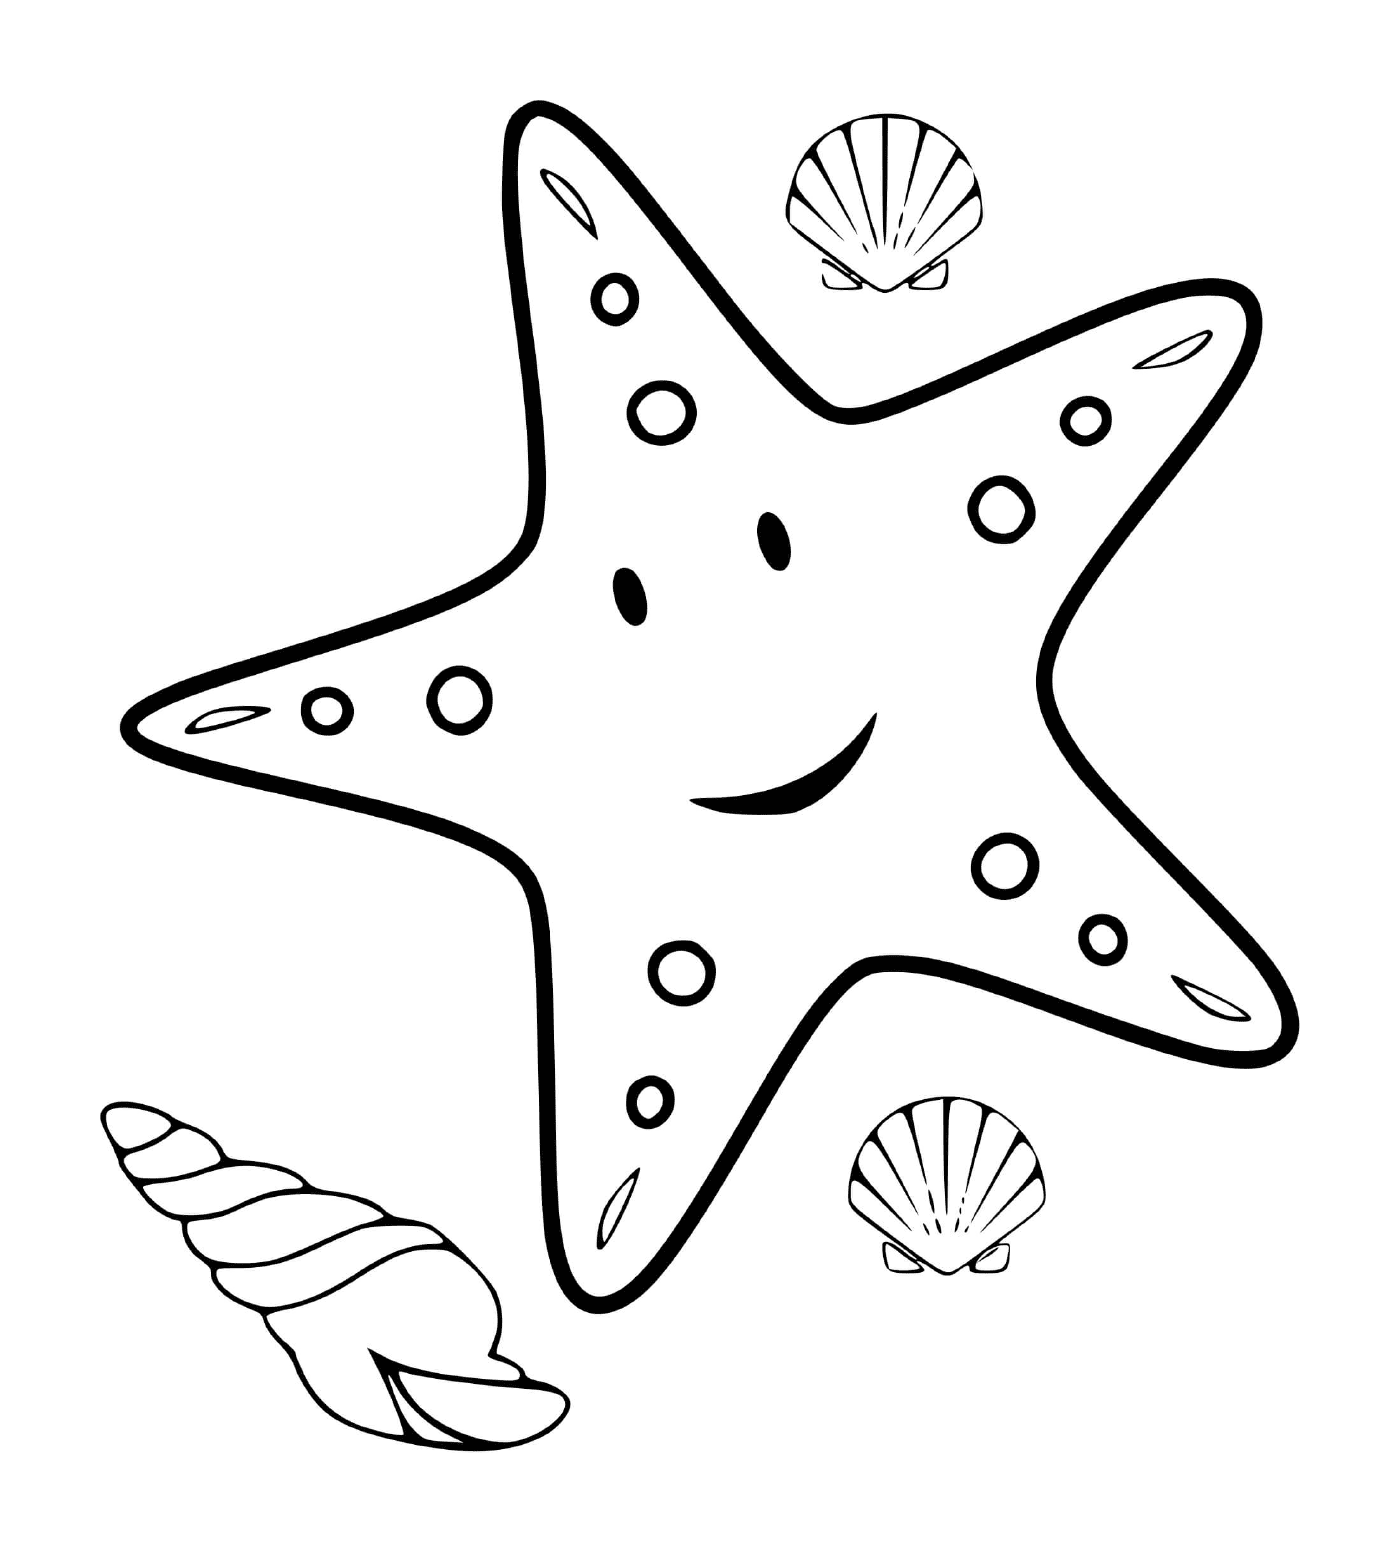  Una stella marina accompagnata da conchiglie marine 